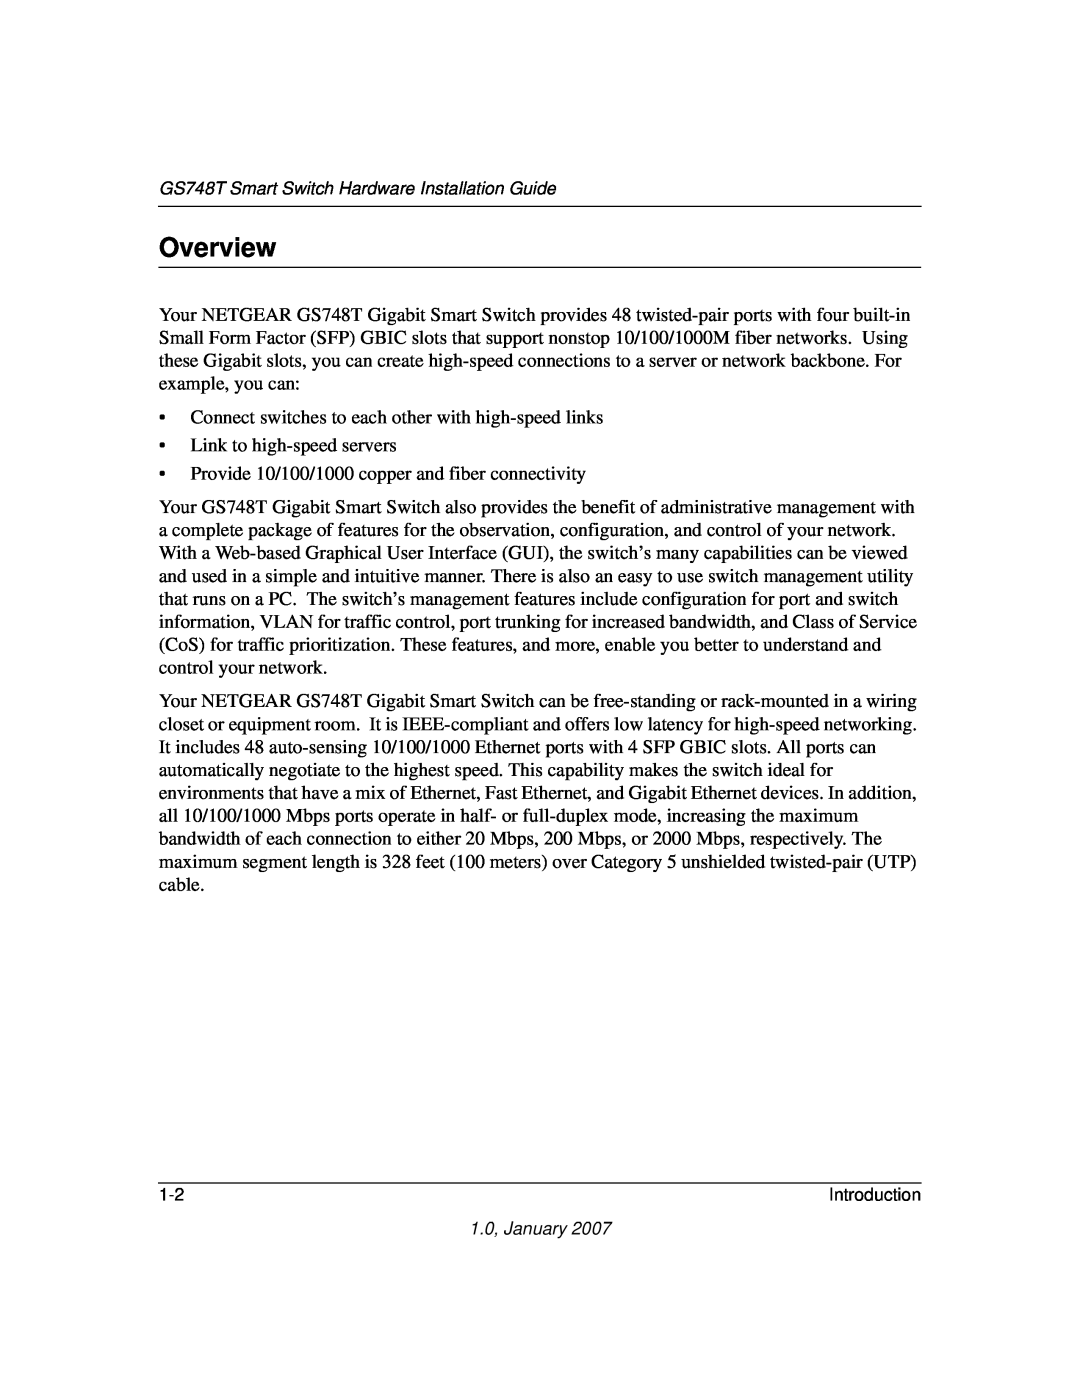 NETGEAR GS748T manual Overview 